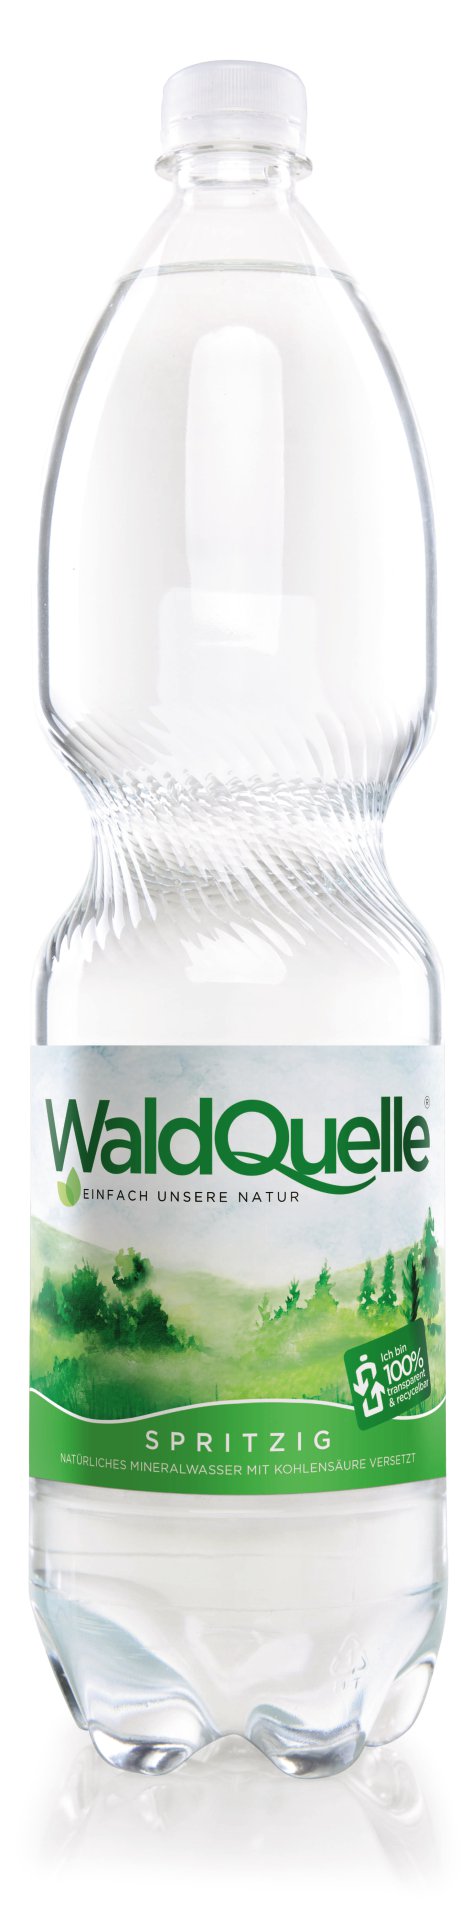 WALDQUELLE Mineralwasser spritzig 1,5 l